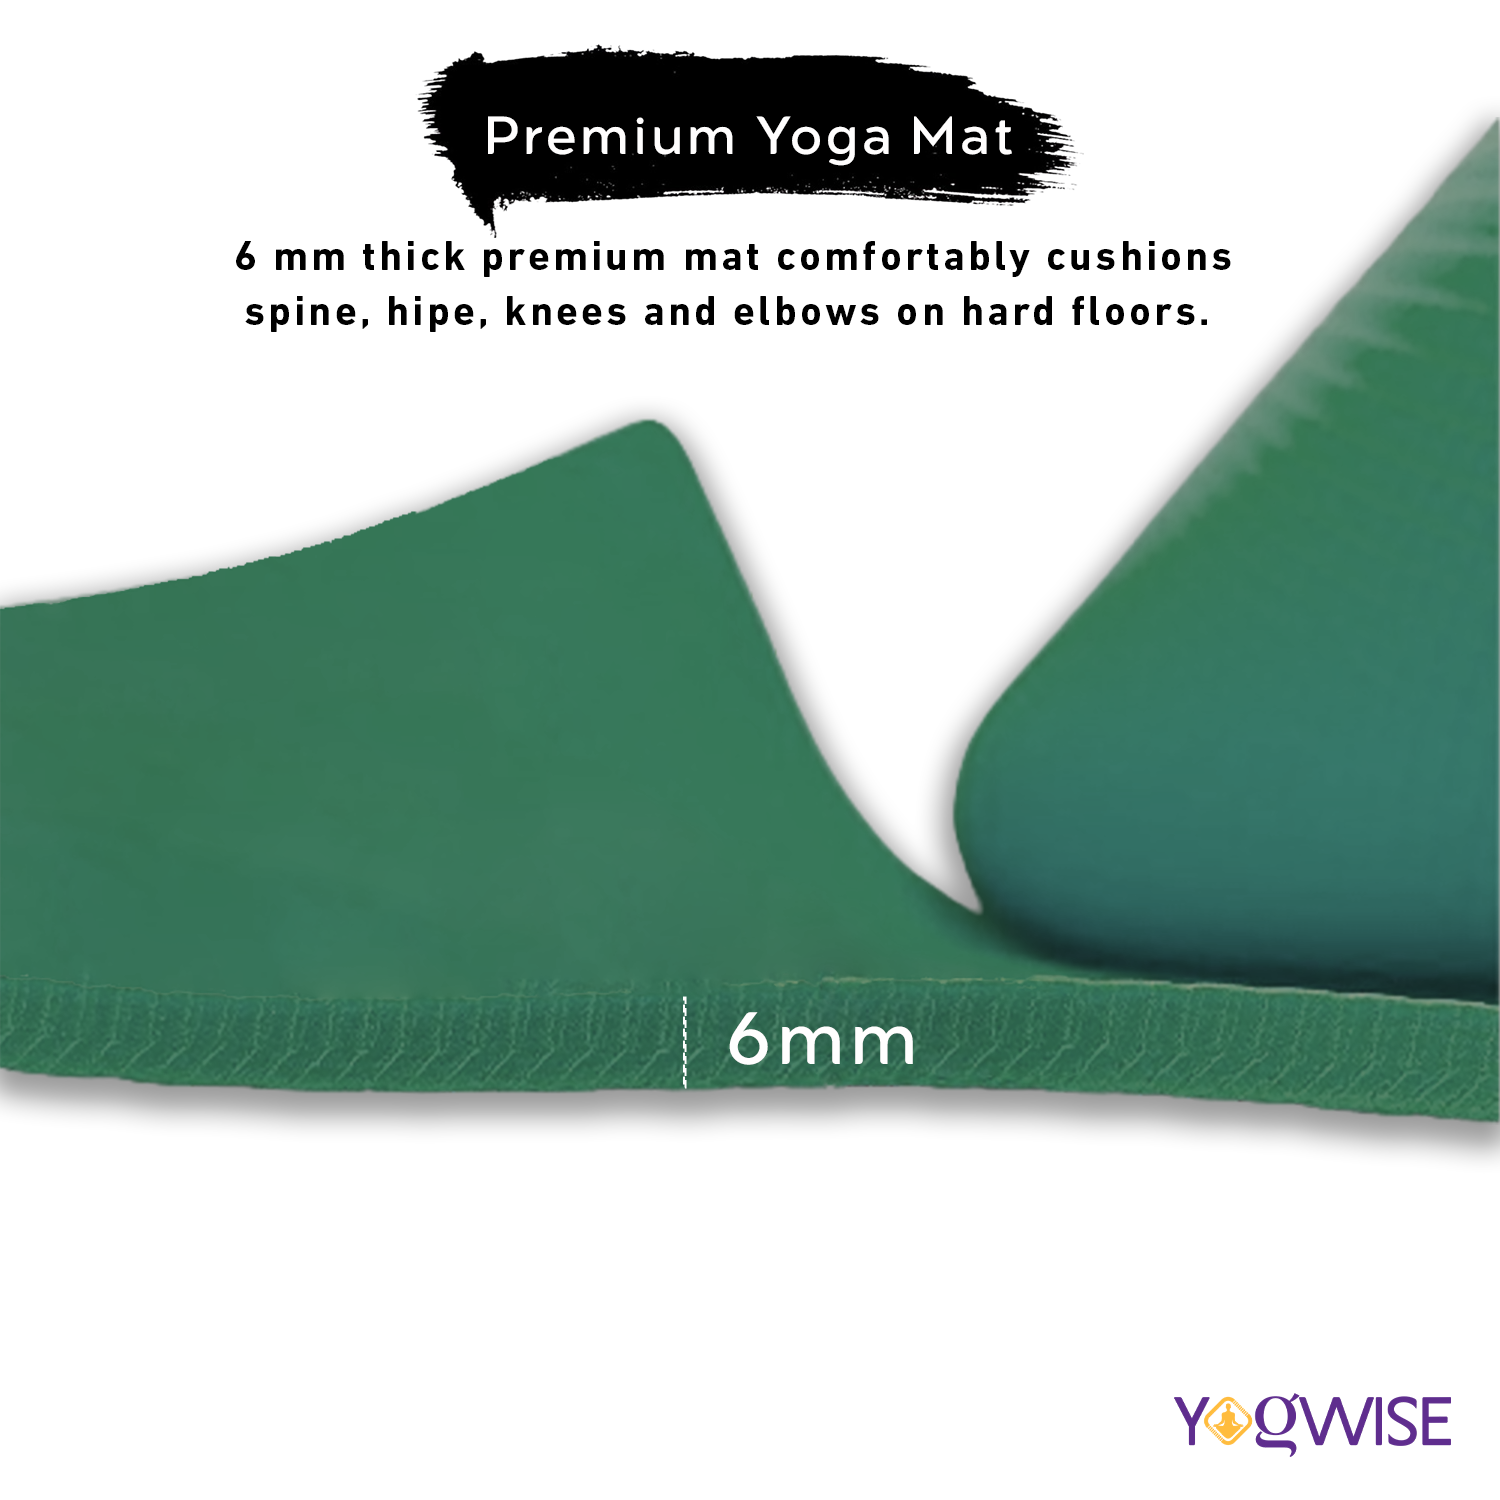 6mm Premium Yoga Mat